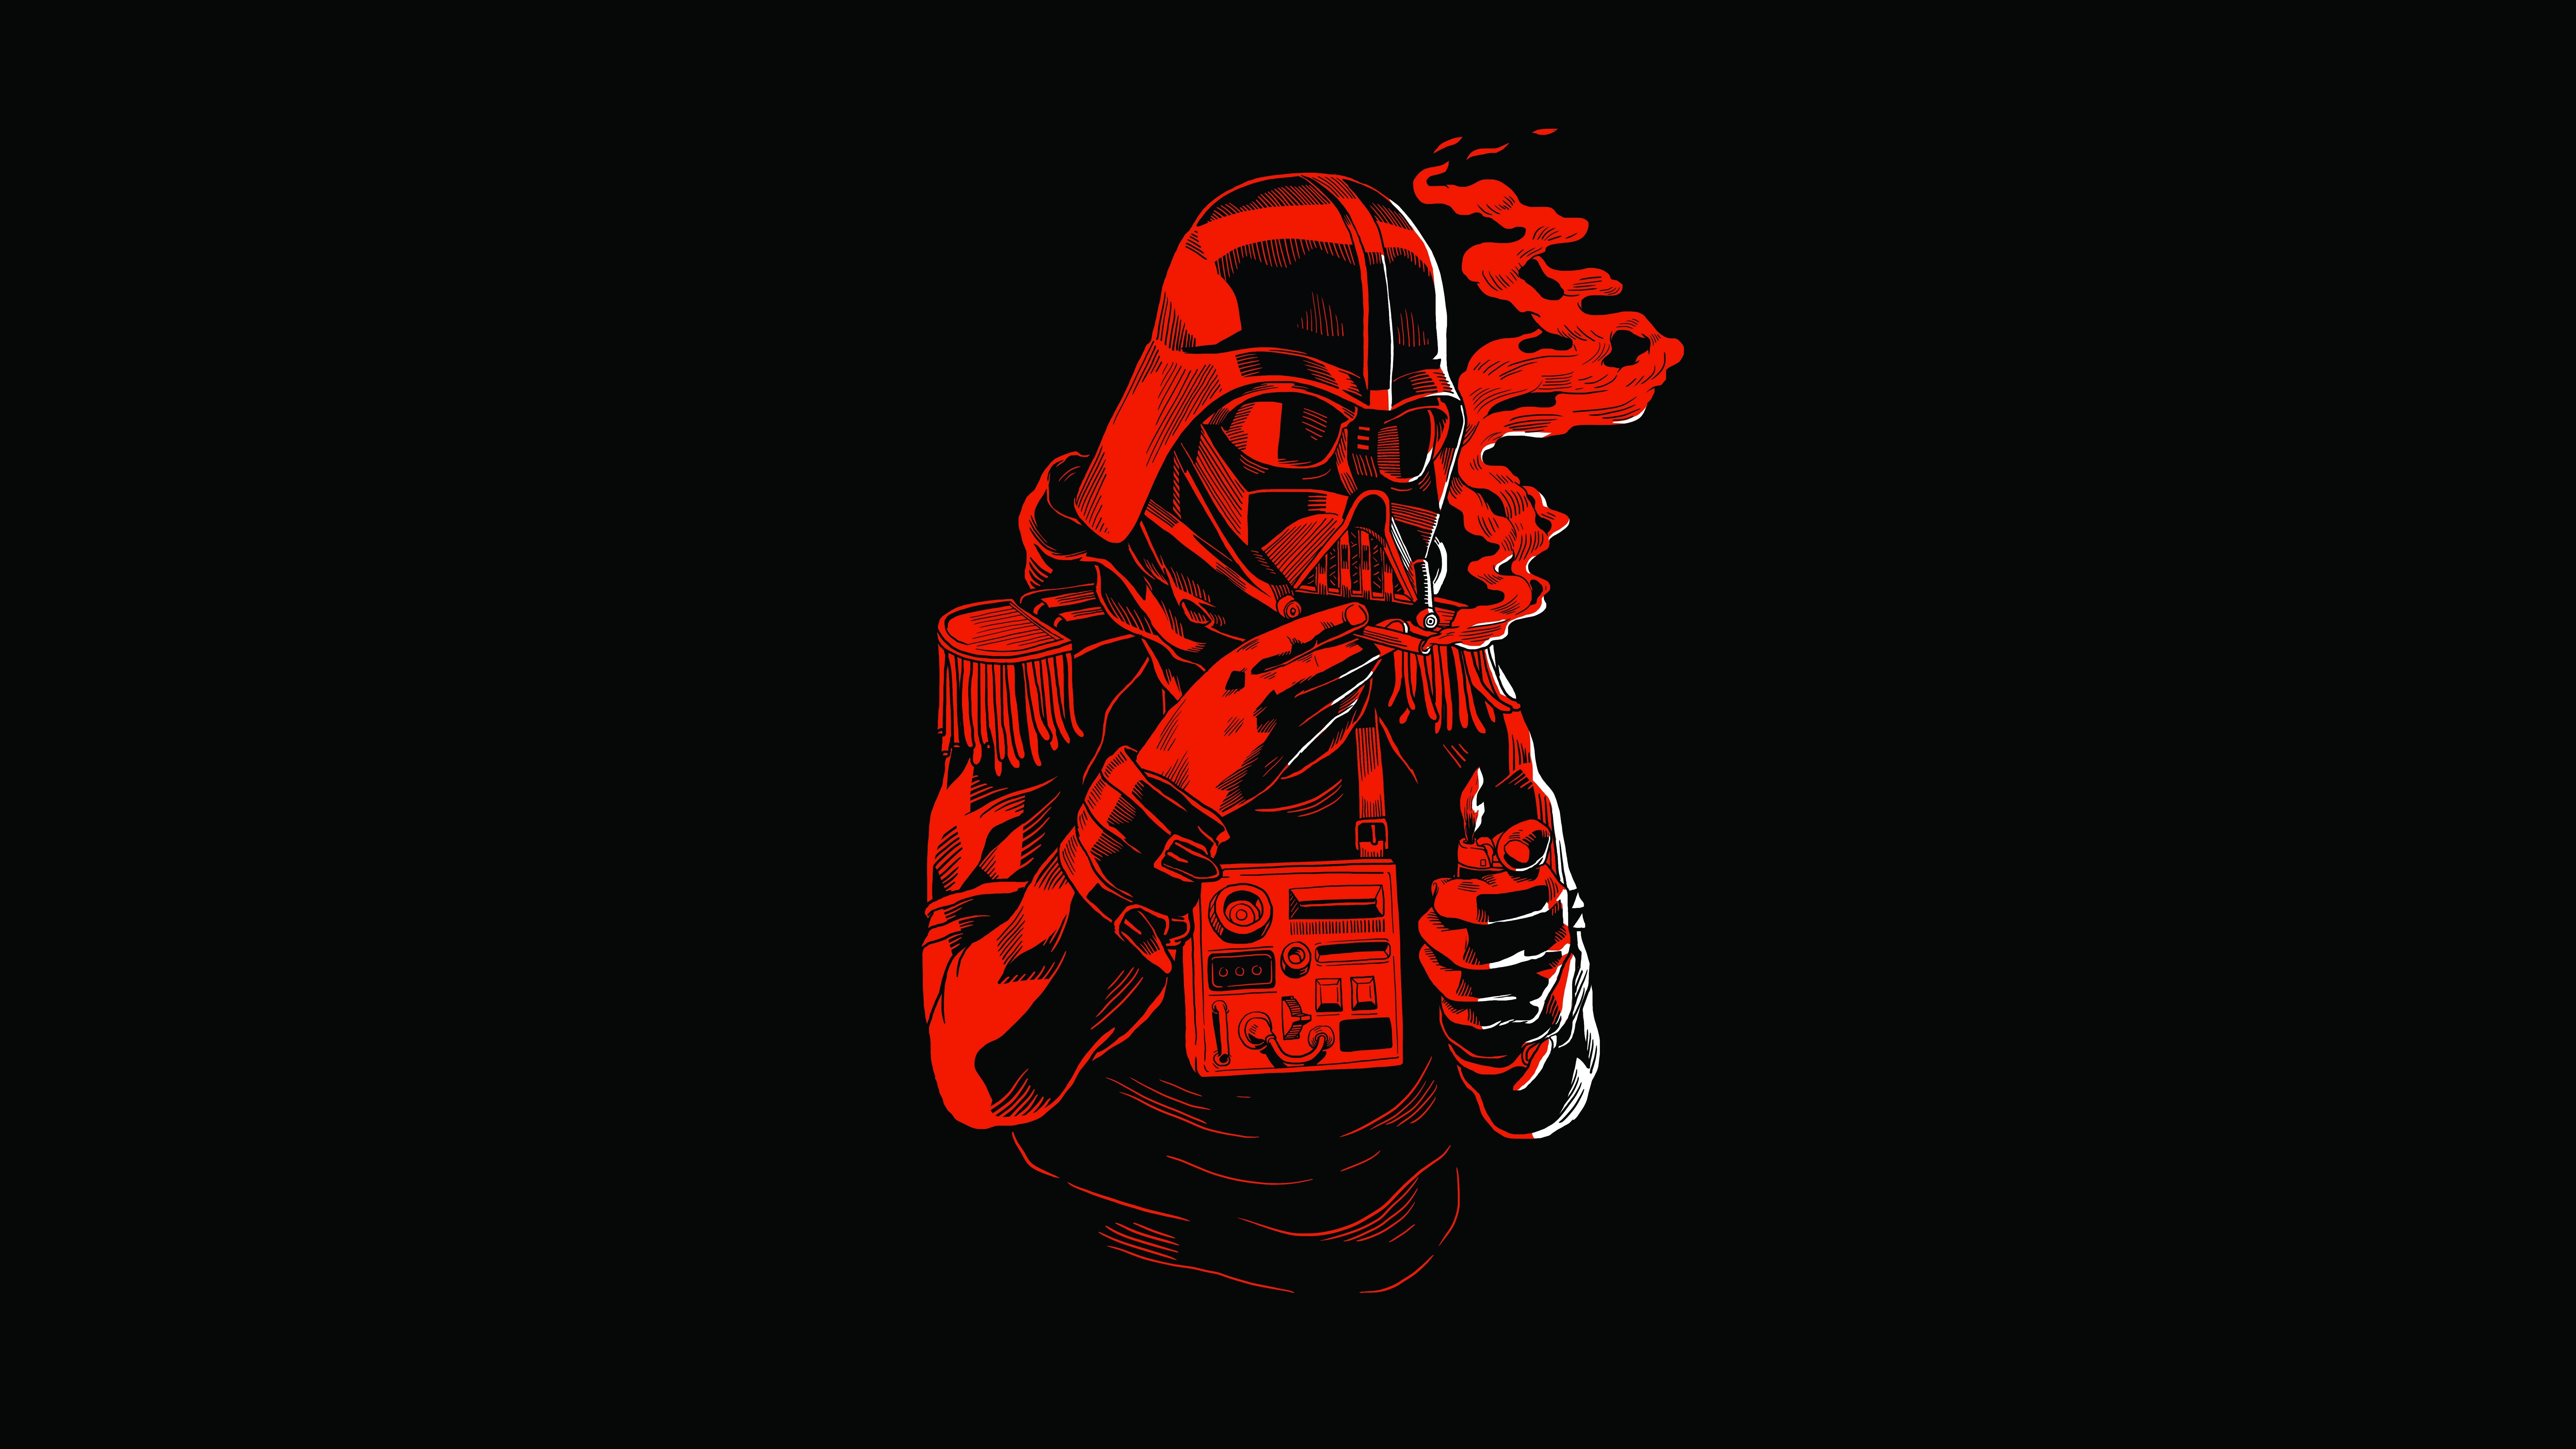 General 9900x5569 Star Wars Darth Vader Star Wars Humor artwork lighter black background simple background Sith black red humor science fiction Star Wars Villains